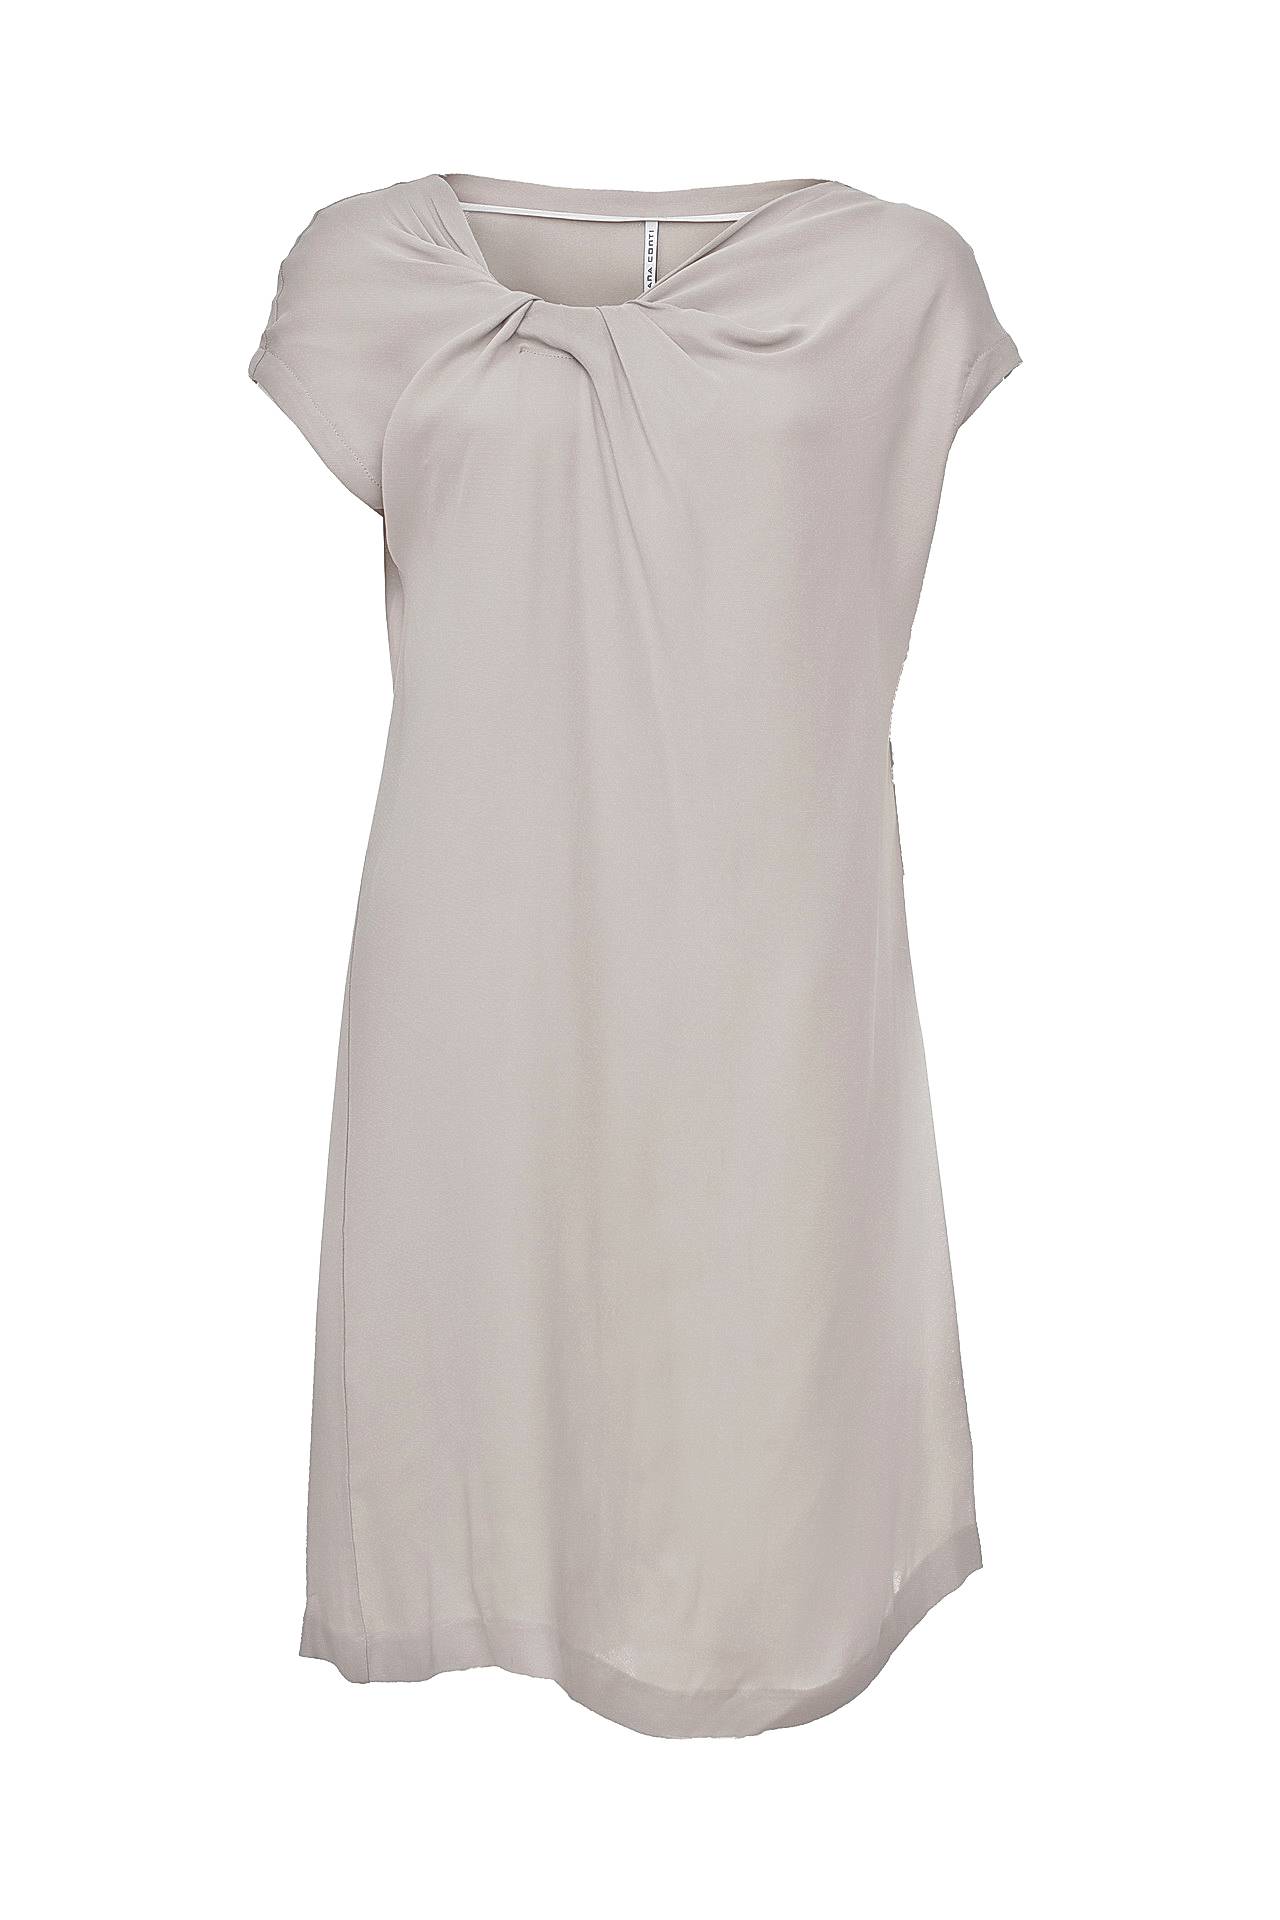 Одежда женская Платье LIVIANA CONTI (943/10.1). Купить за 7920 руб.